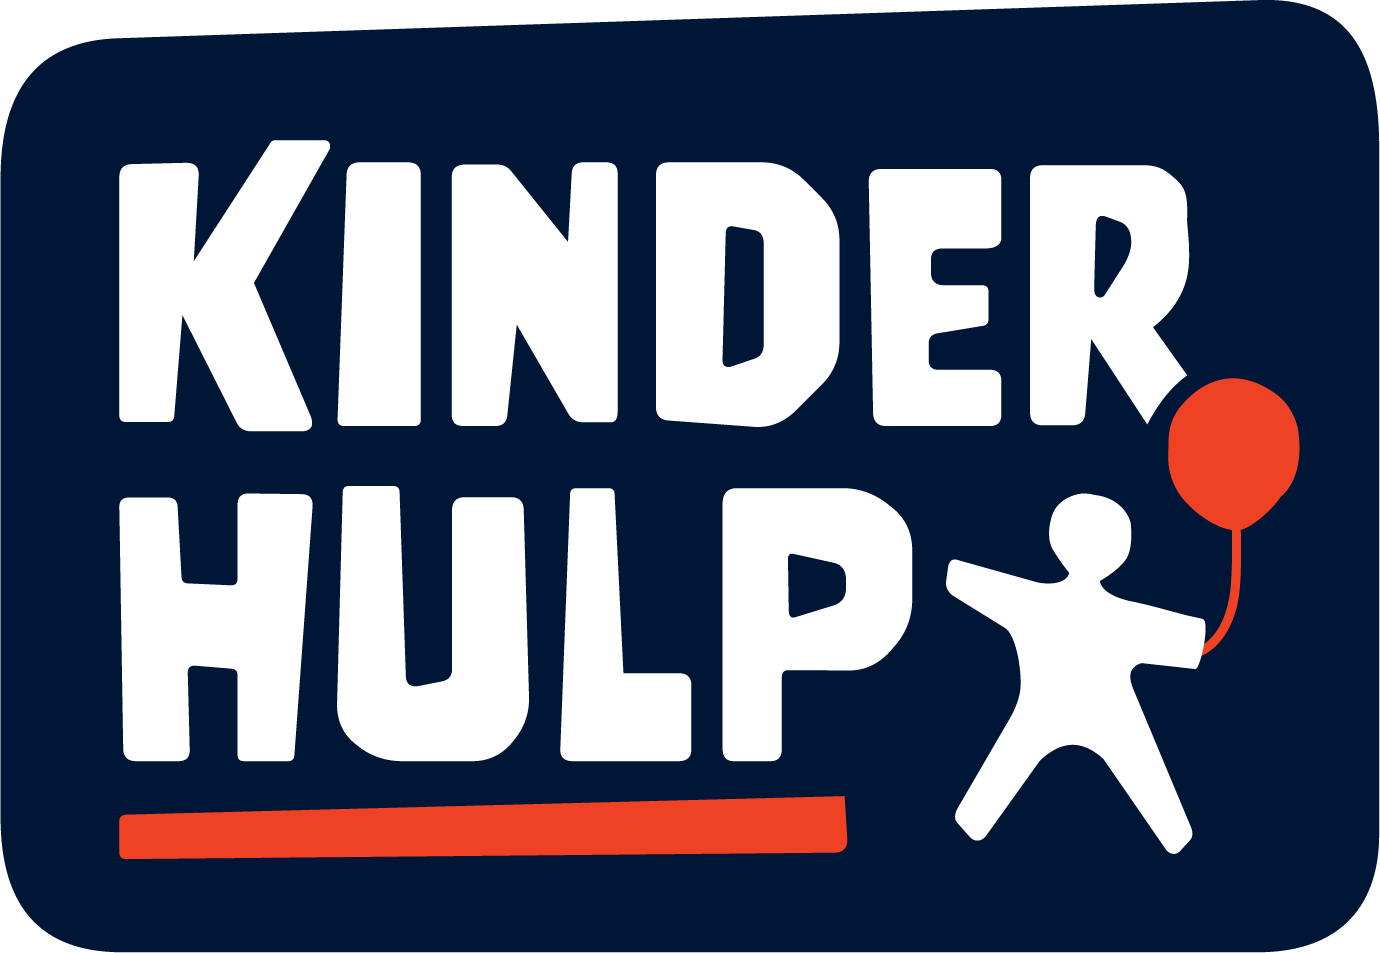 (c) Kinderhulp.nl